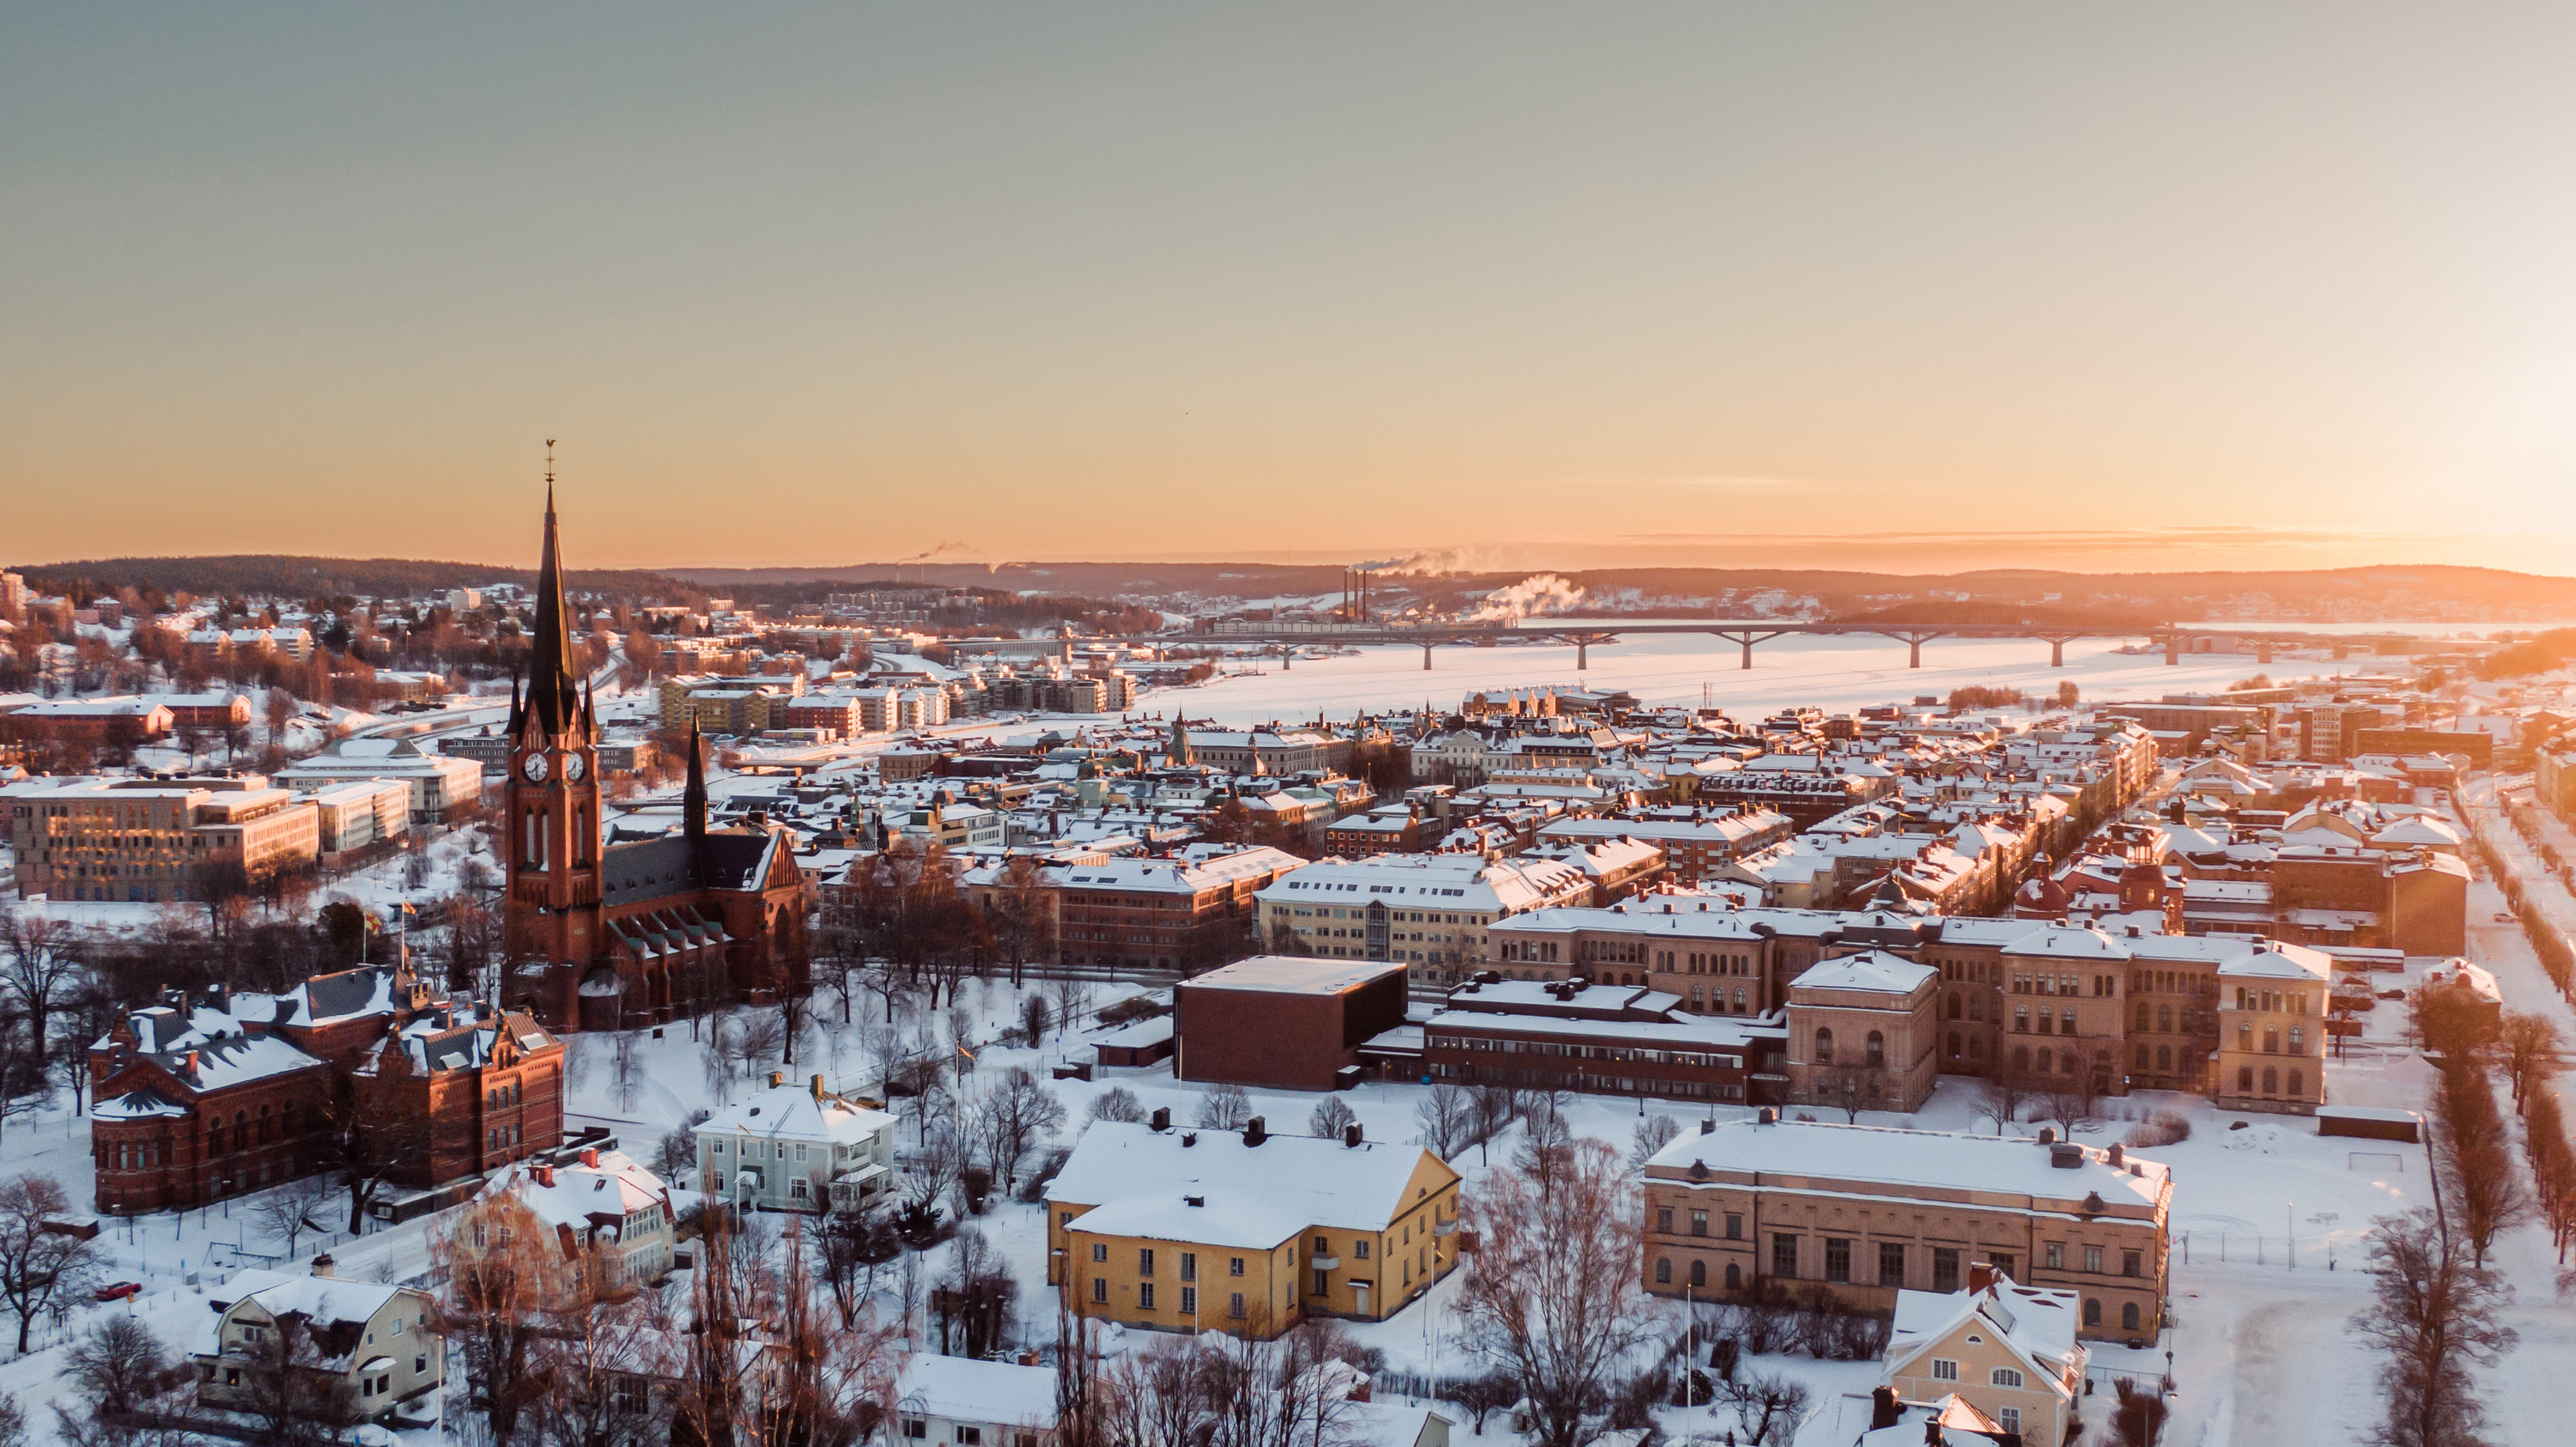 Drönarbild över centrala Sundsvall på vintern.